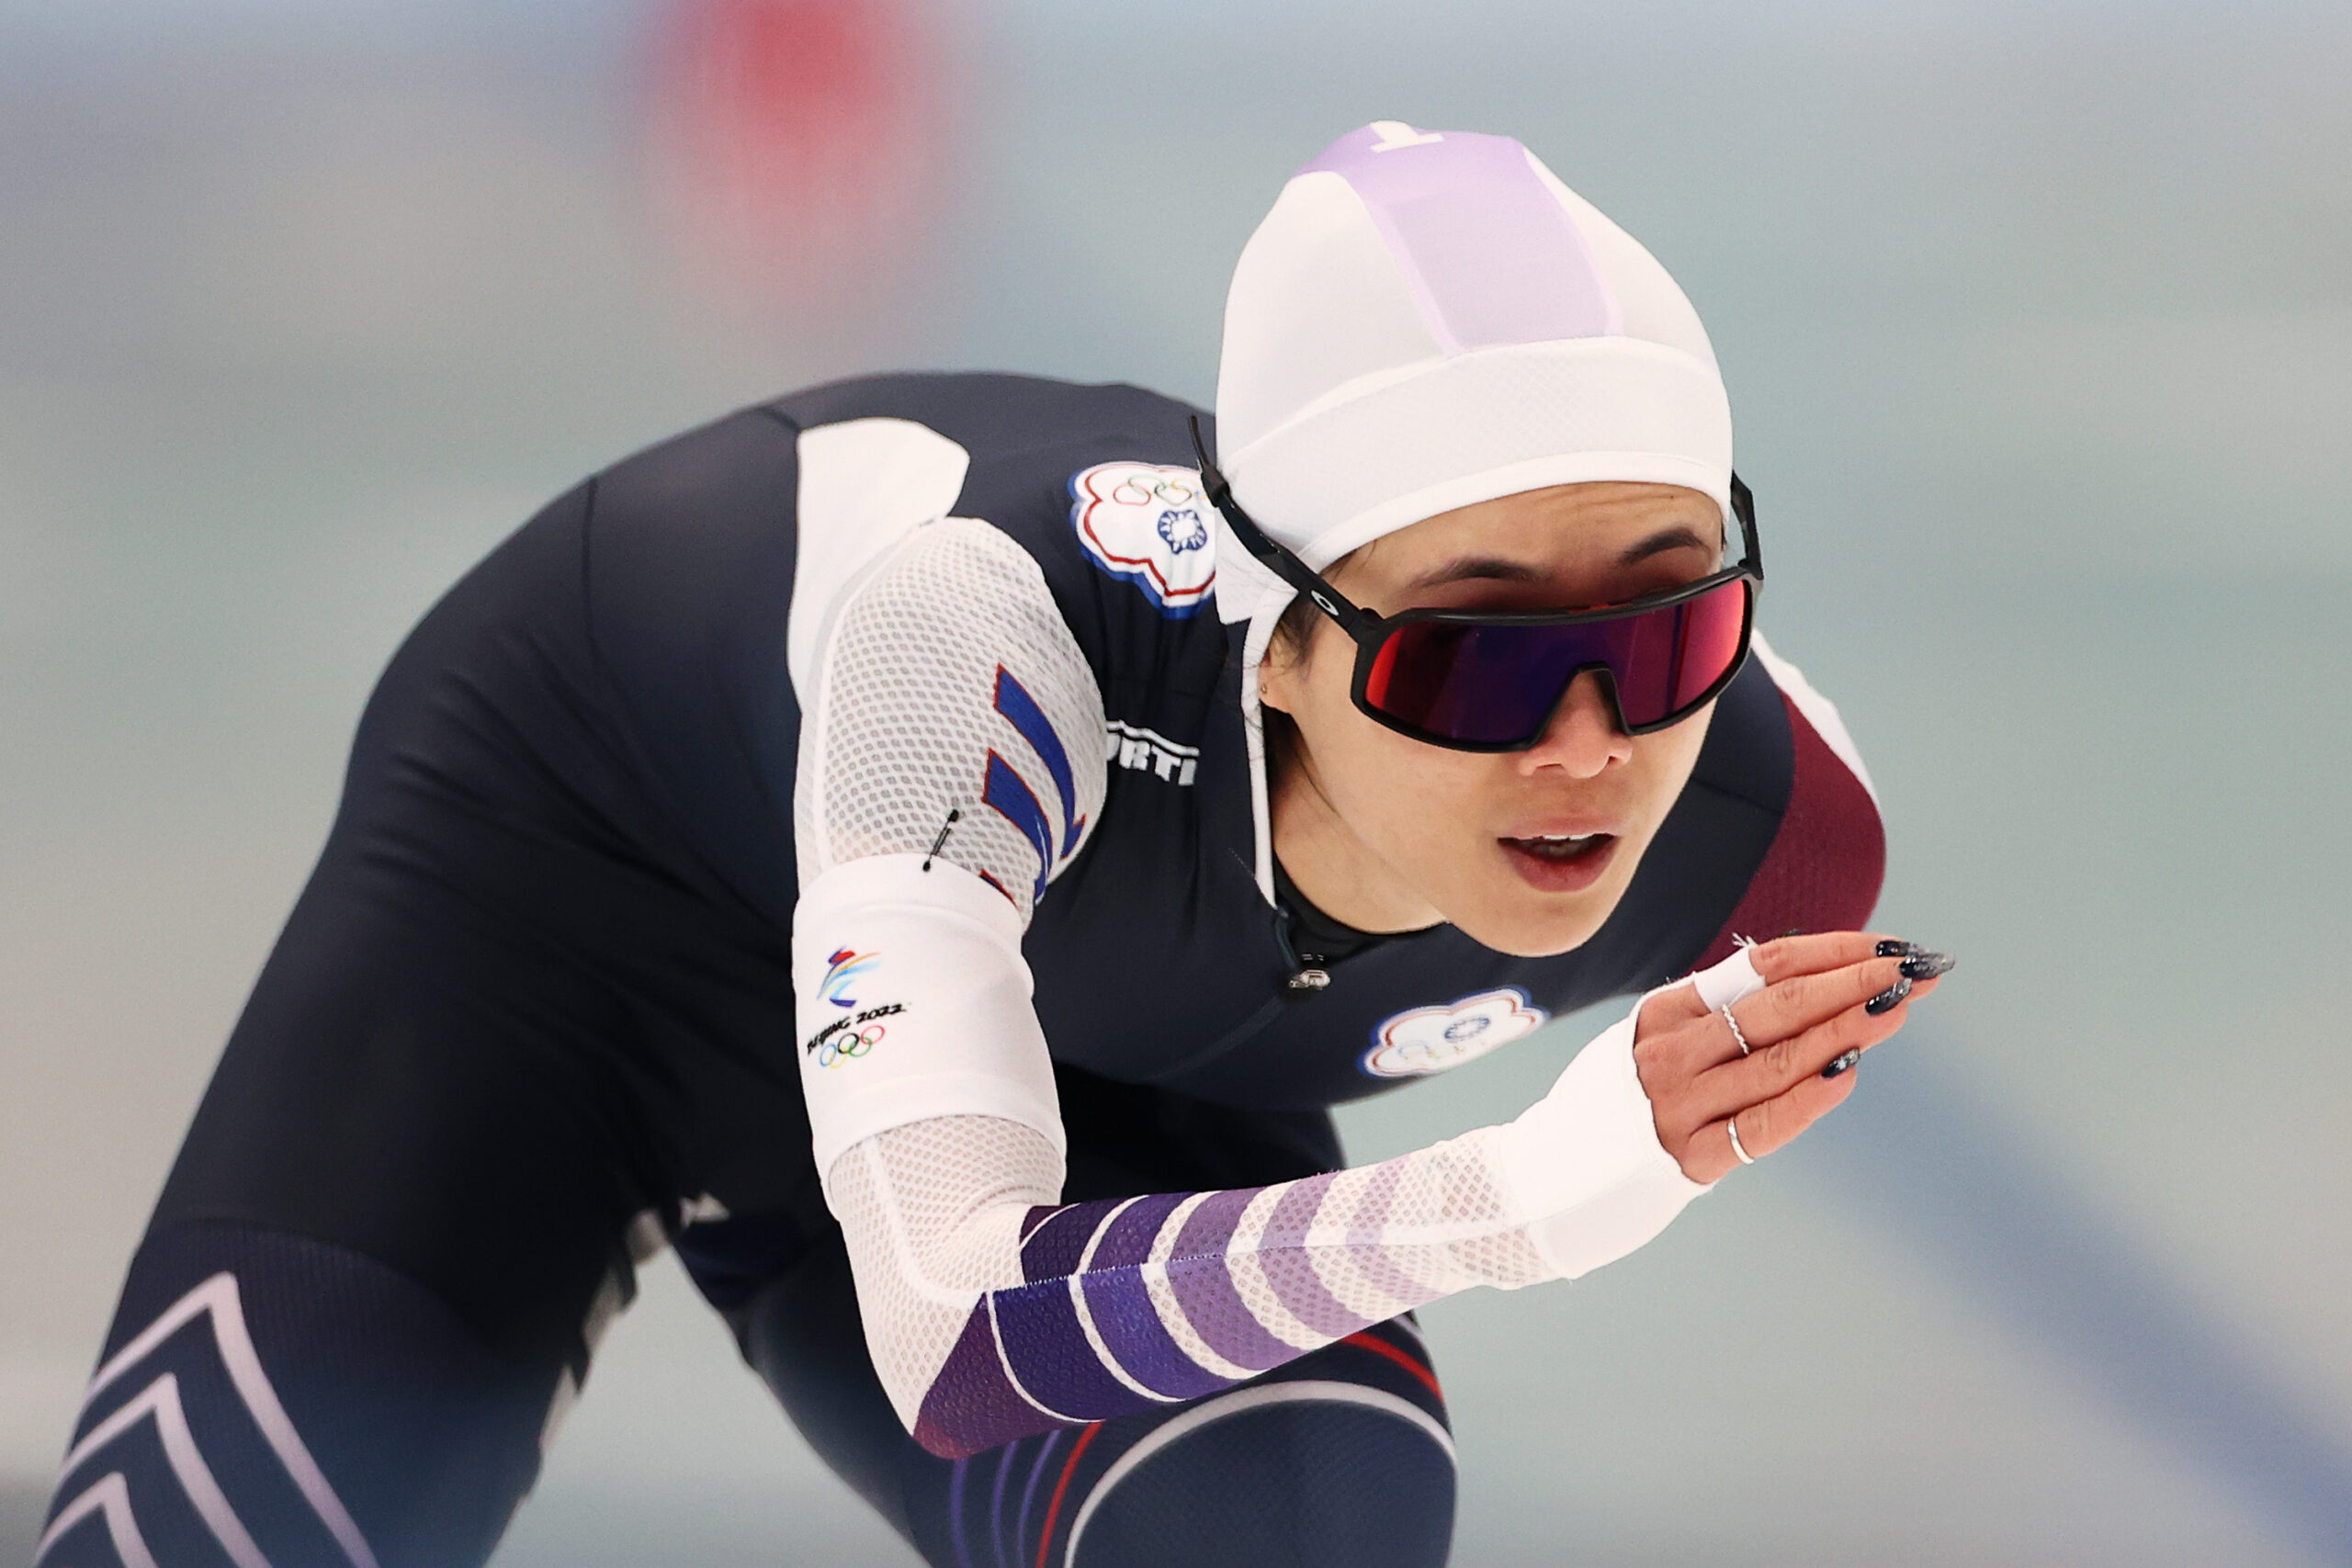 Die taiwanische Eiskunstläuferin Huang Yu-ting ist in der Kritik wegen eines chinesischen Trainingsanzugs.